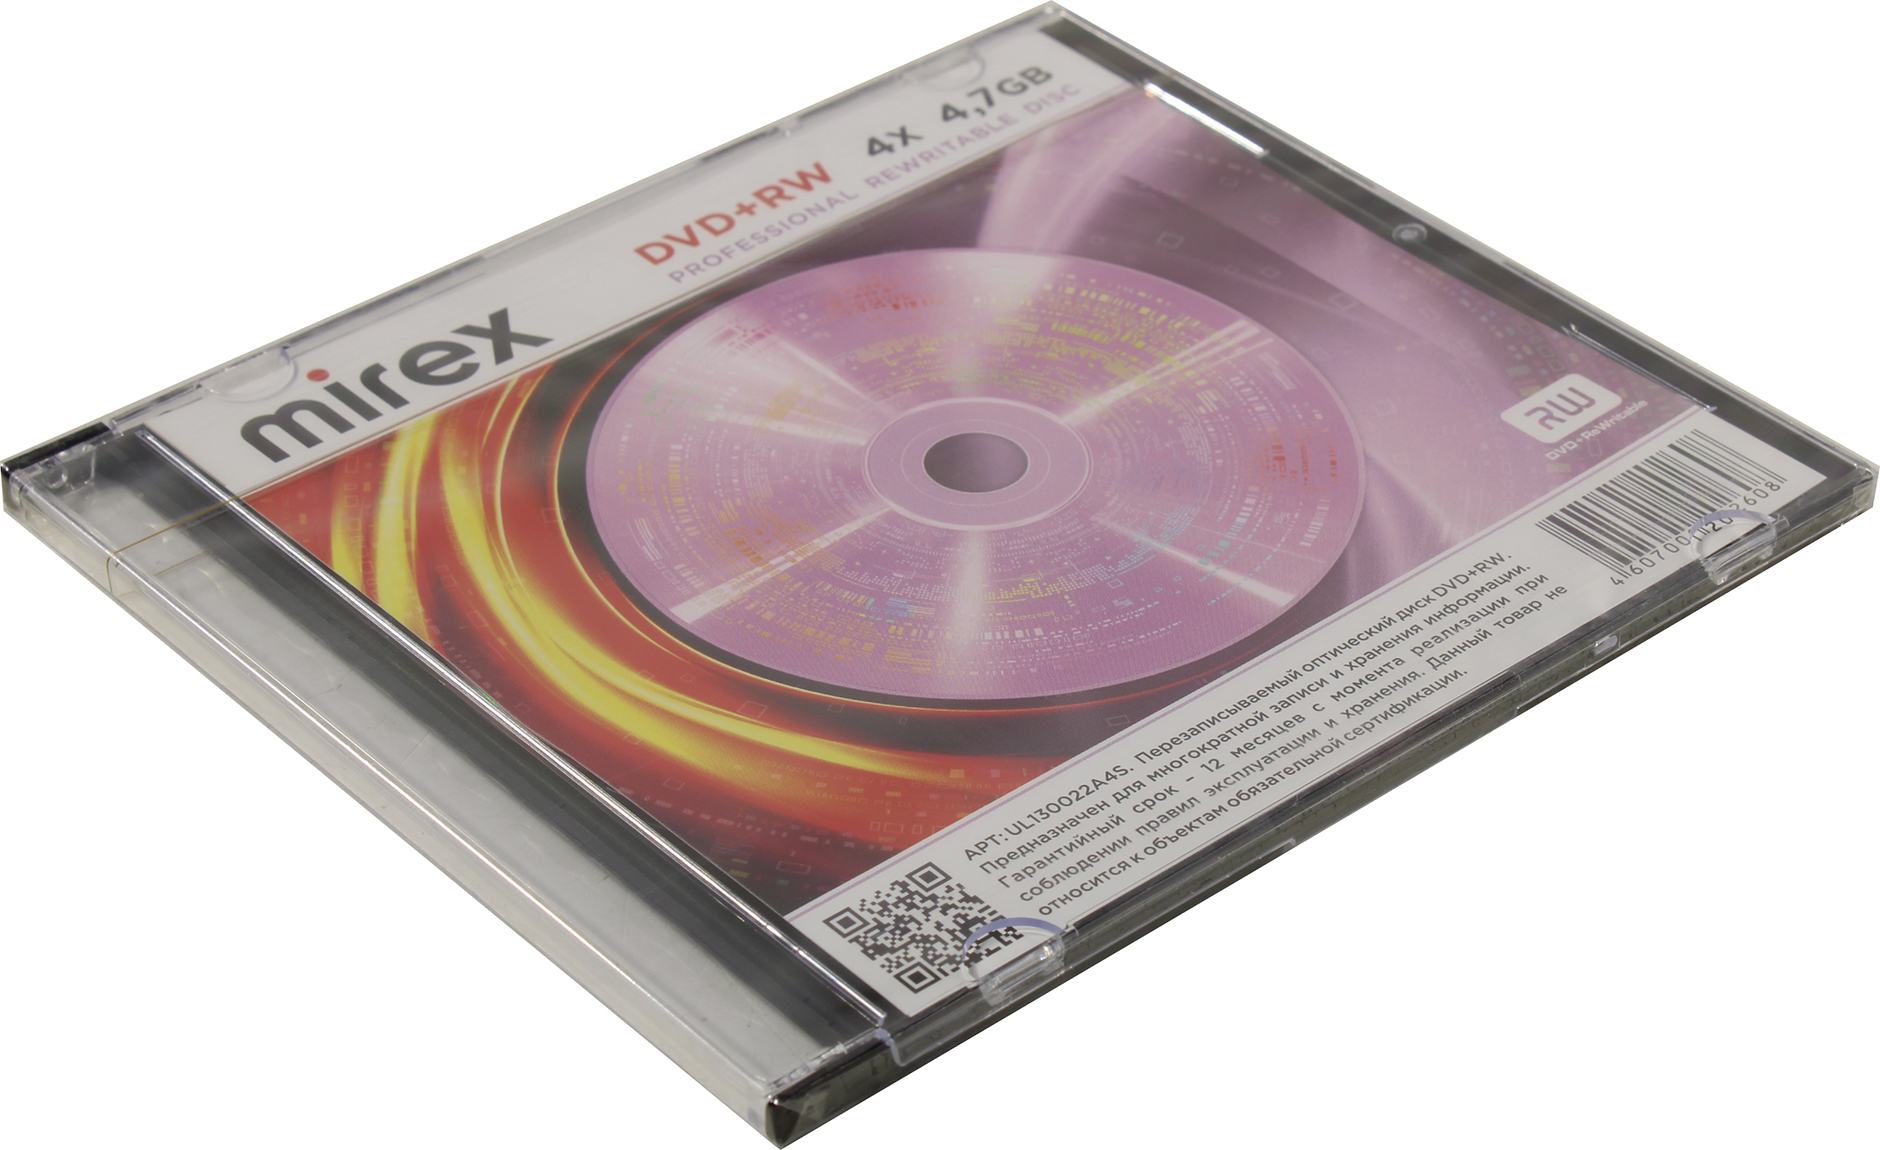 Диск Mirex DVD+RW, 4.7Gb, 4x, Jewel Case, 1 шт (202608)